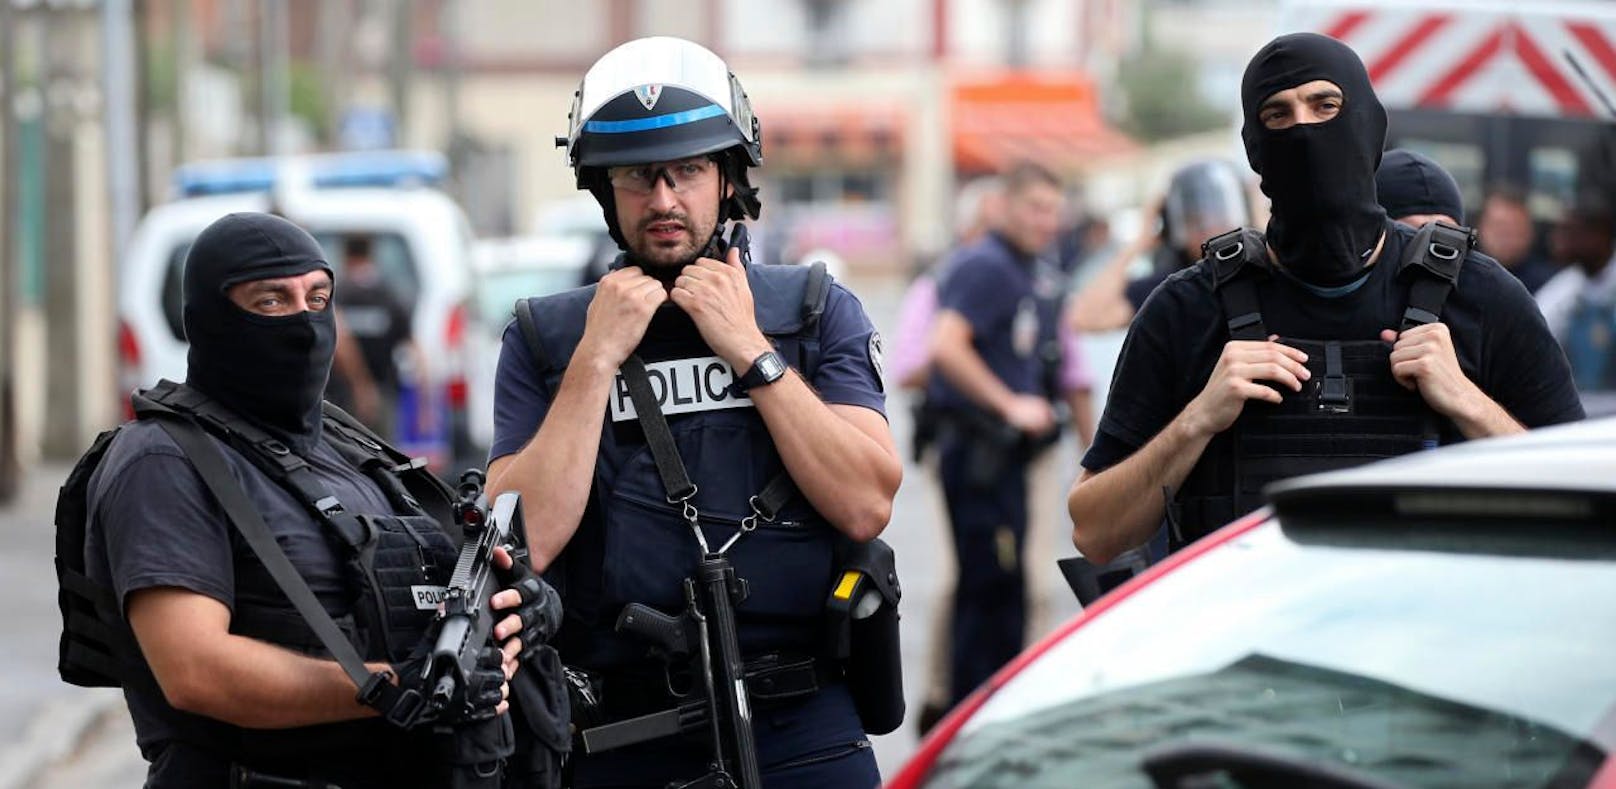 (Symbolbild) Nach der blutigen Terror-Geiselnahme in einem Supermarkt sind in Frankreich mehrere mutmaßliche Komplizen des Täters festgenommen worden.